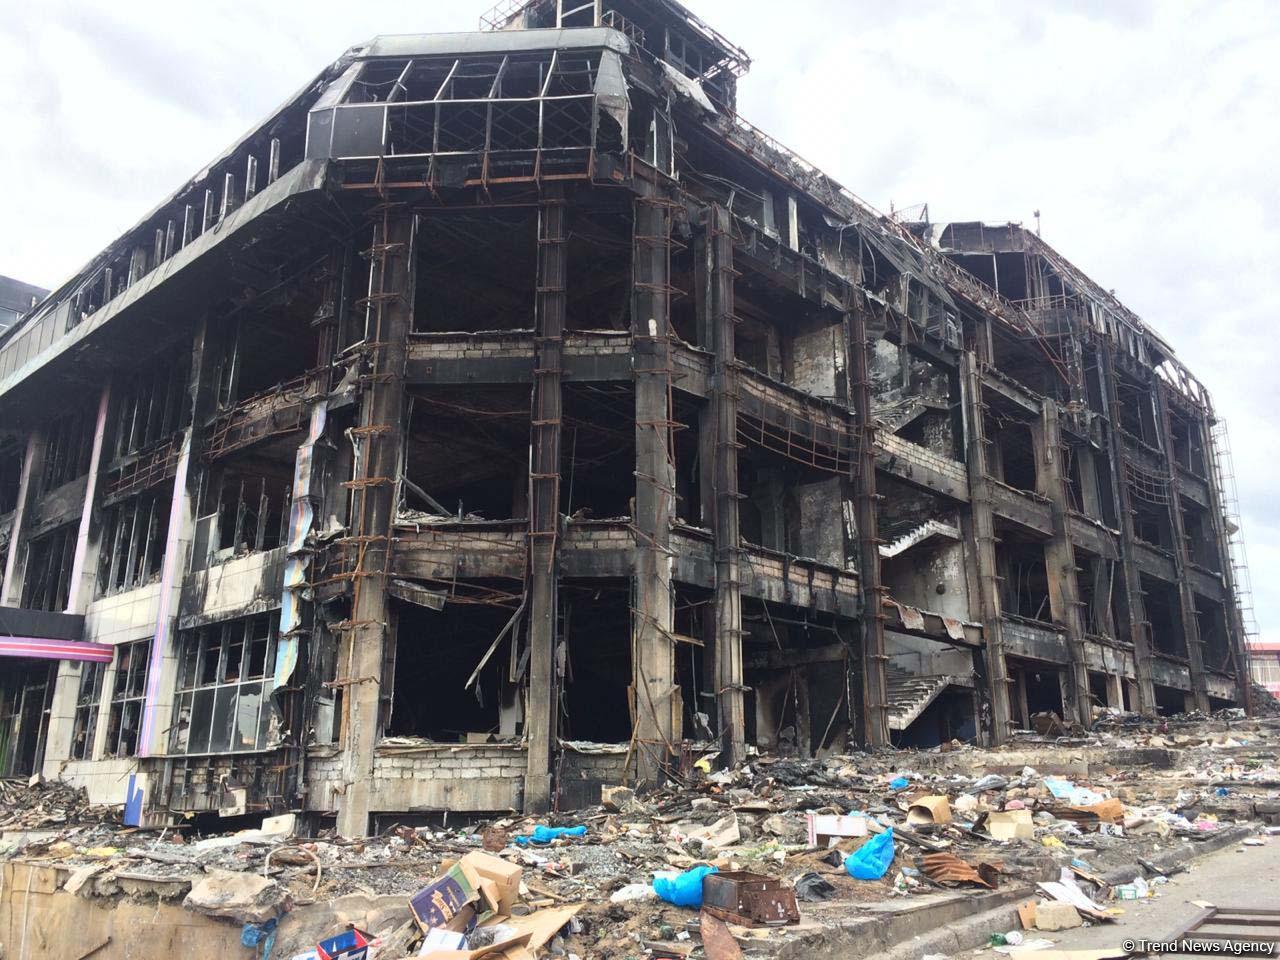 ИВ: Демонтаж сгоревшего в Баку т/ц займет минимум два месяца (ФОТО/ВИДЕО)